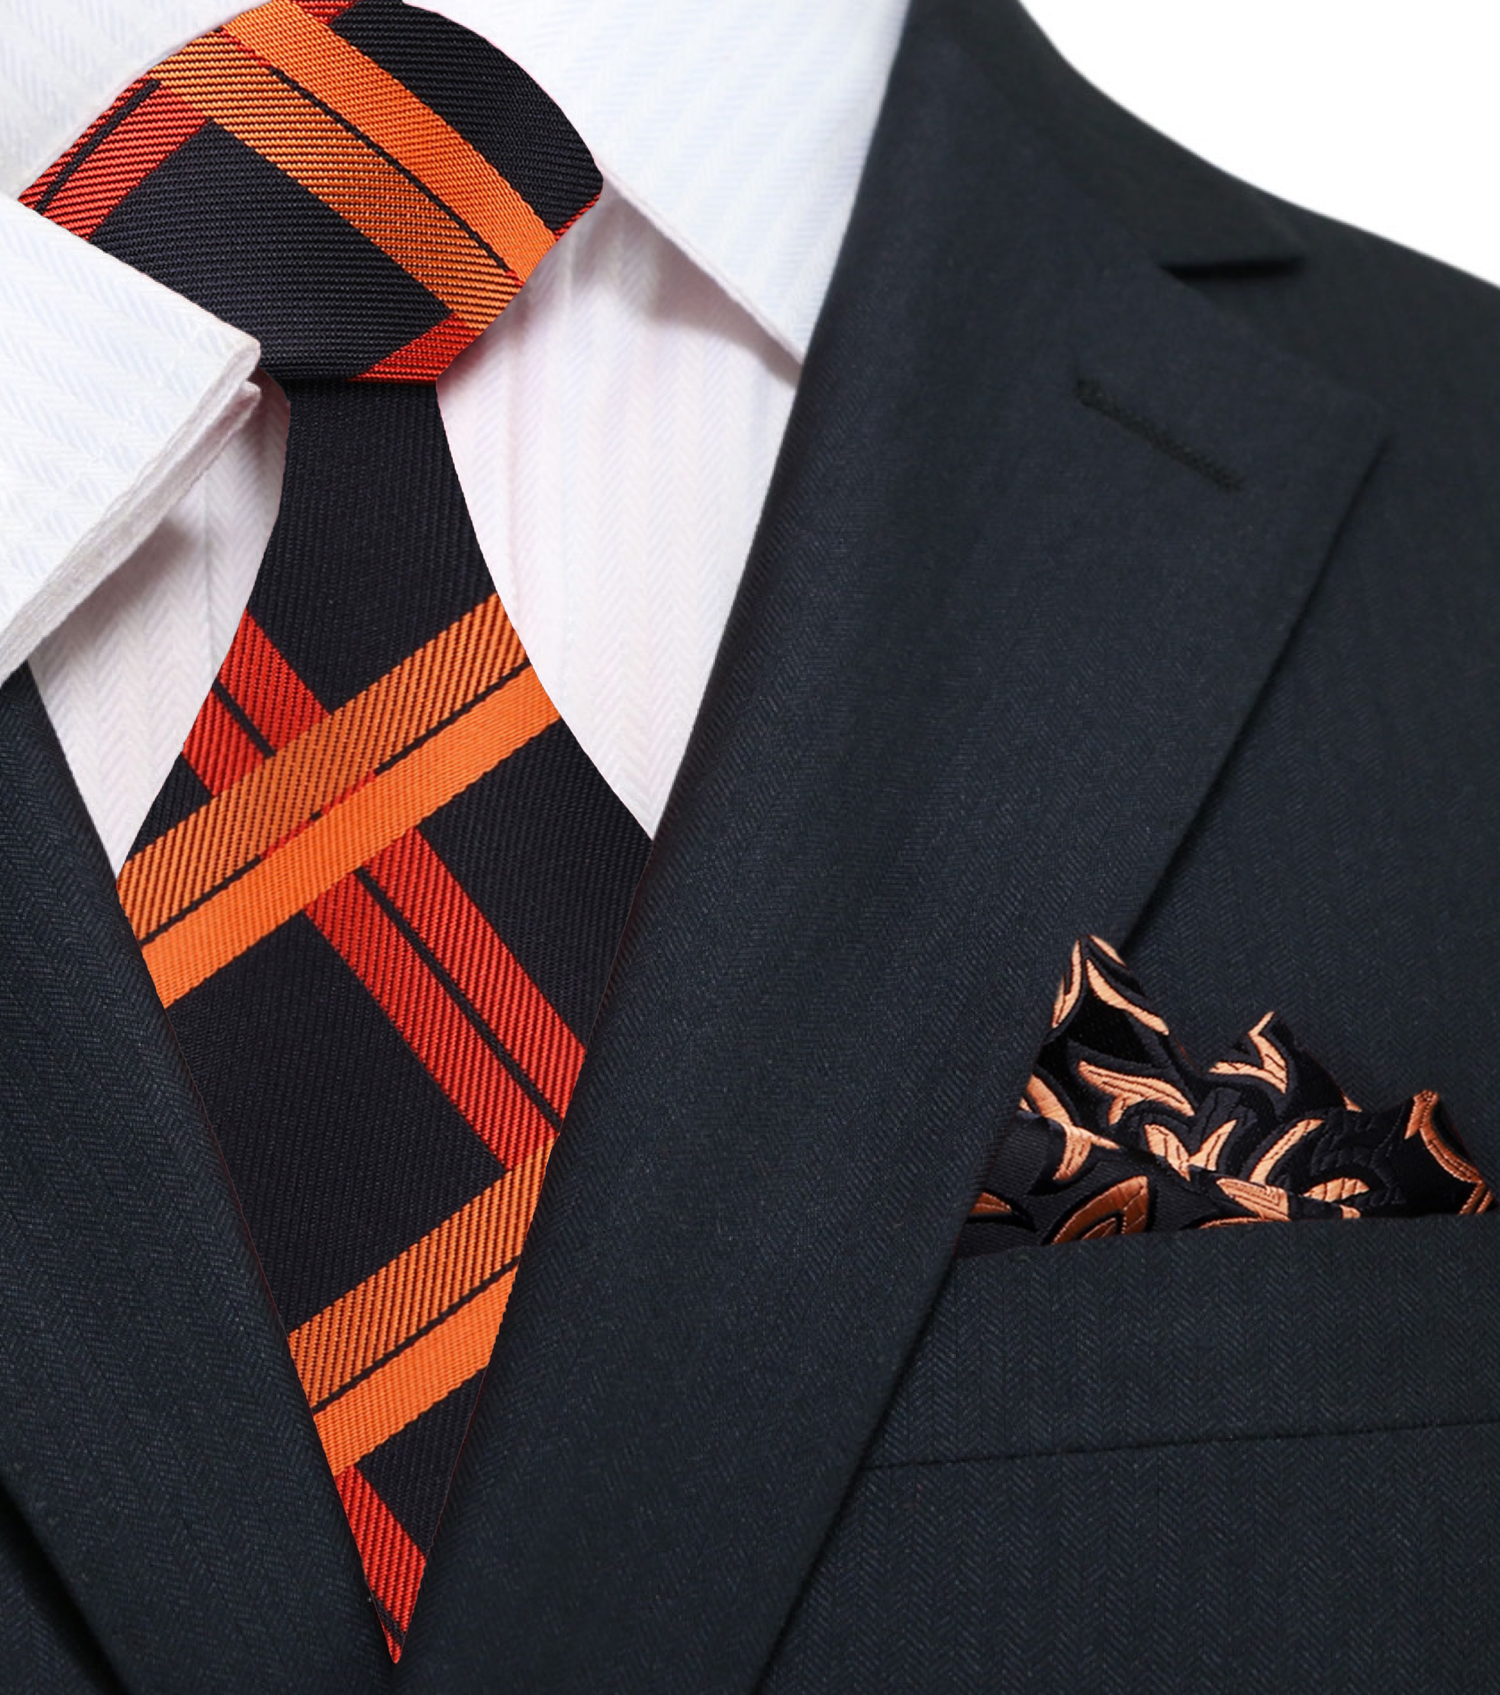 Black, Orange Plaid Necktie and Accenting Square